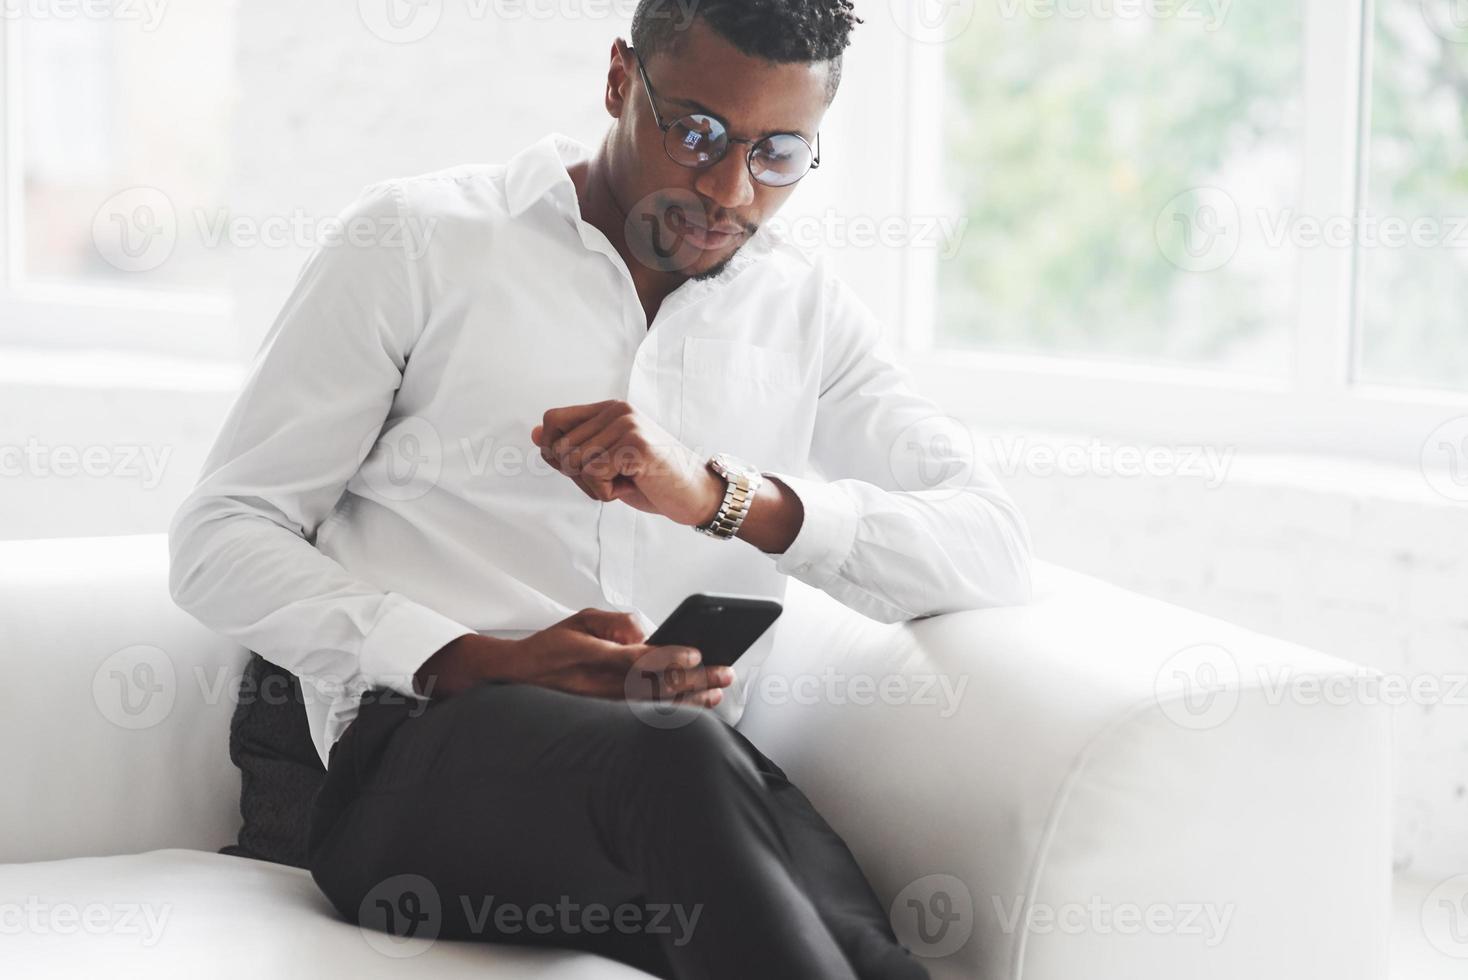 novo acordo está chegando. verificando a hora. jovem afro-americano no escritório usa sentado no sofá branco foto